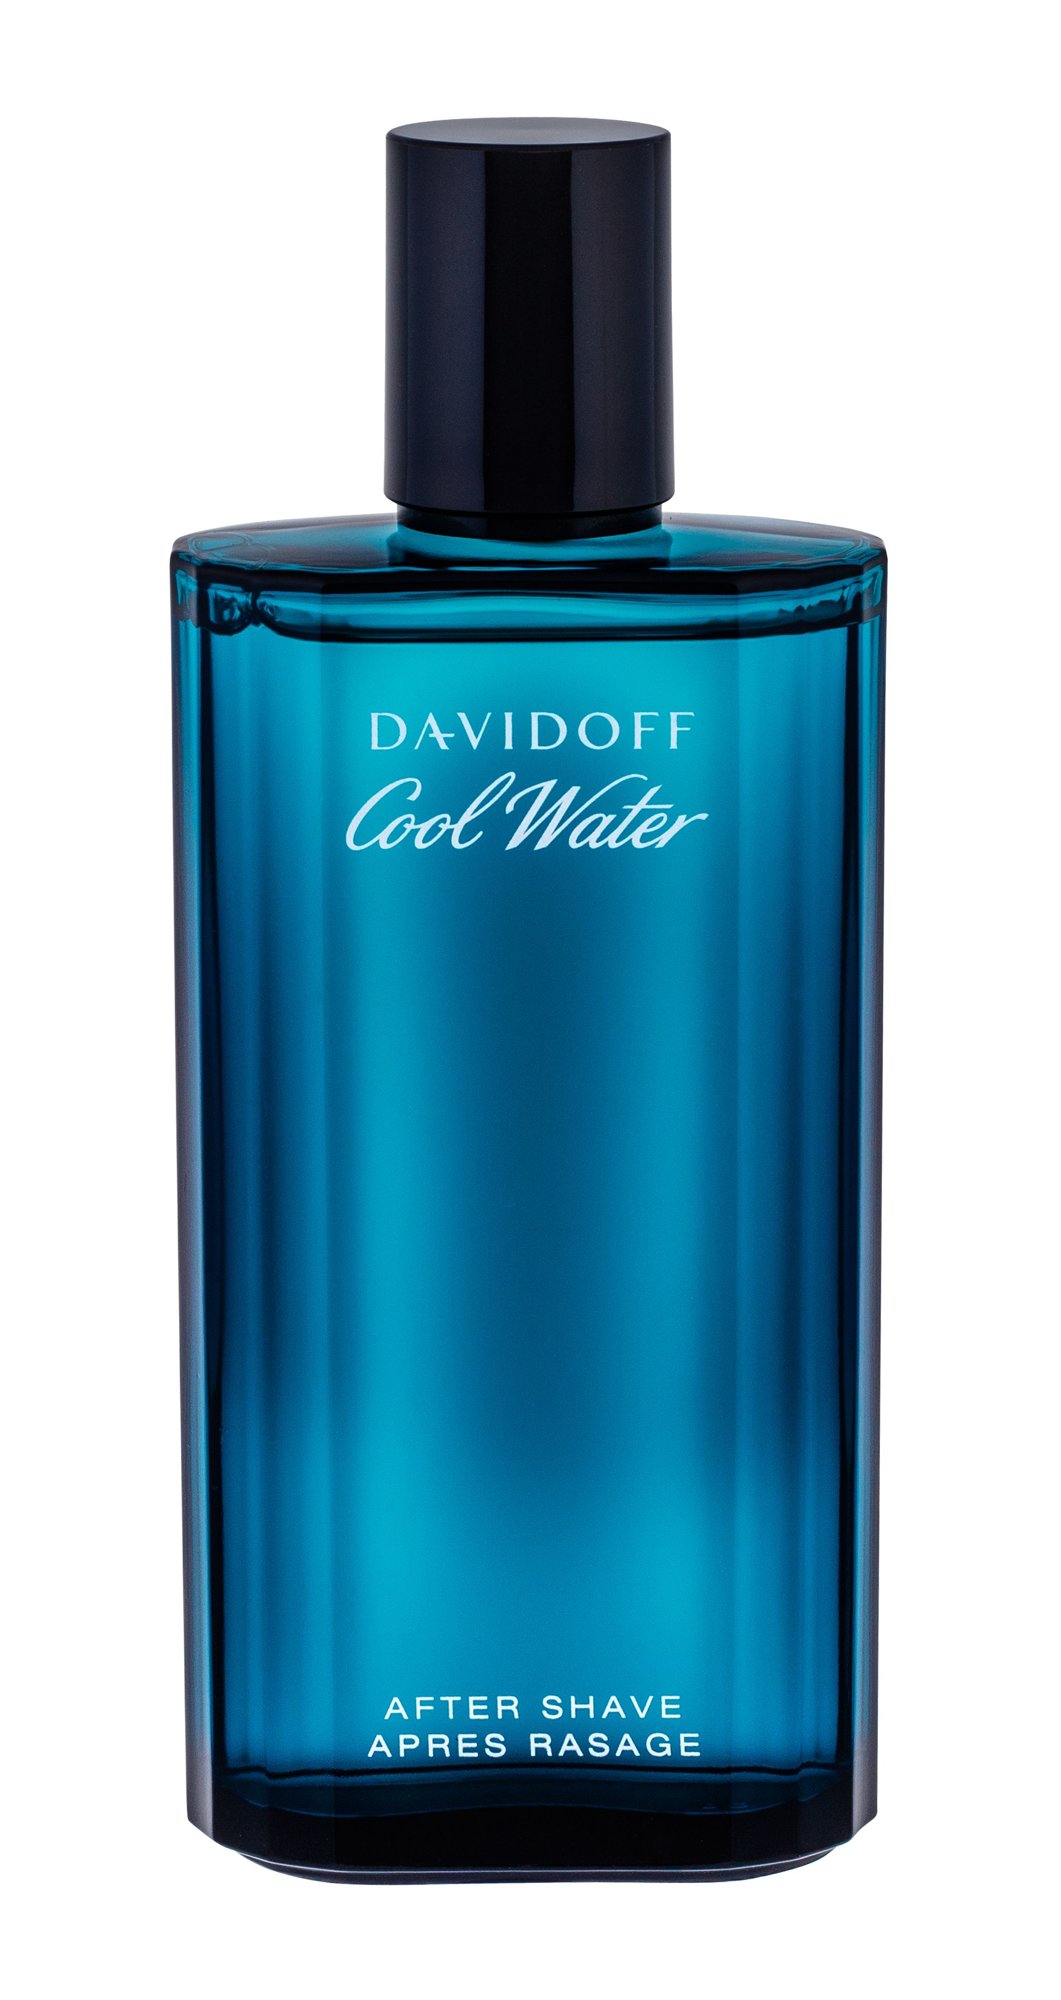 Davidoff Cool Water 125ml vanduo po skutimosi